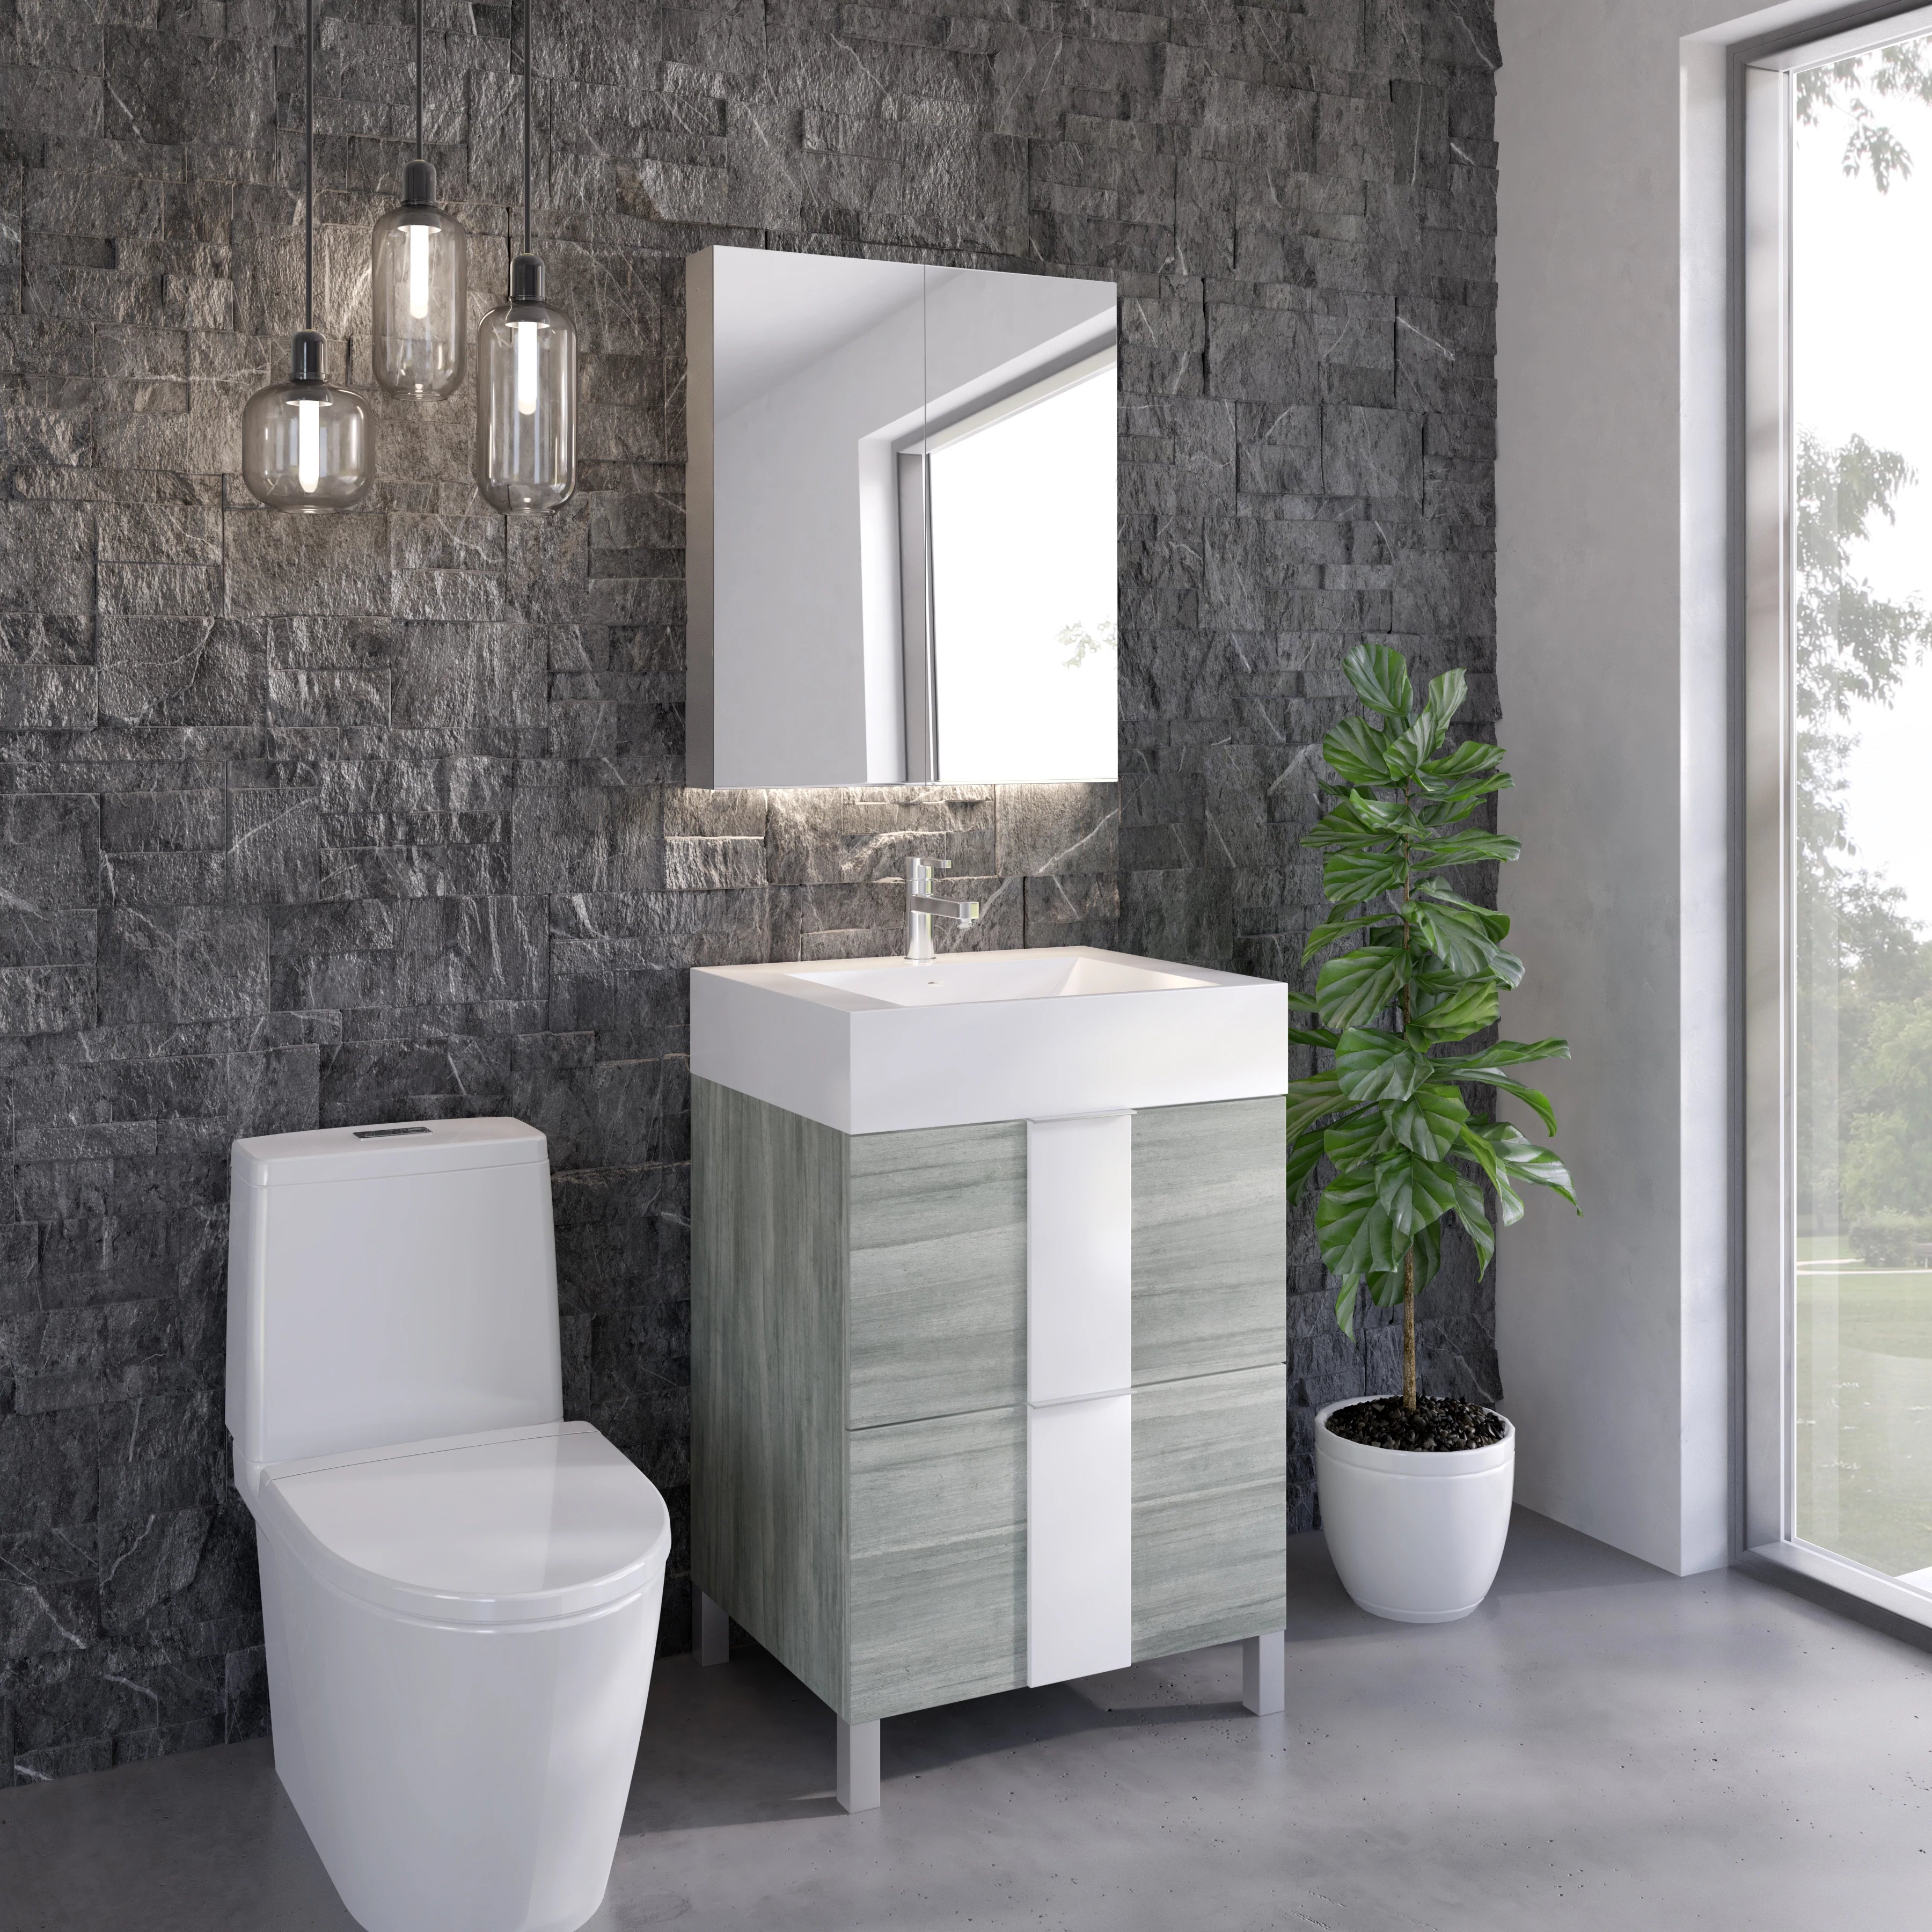 Vanité de salle de bain autoportante grise et blanche | Tiroirs | VPP 24